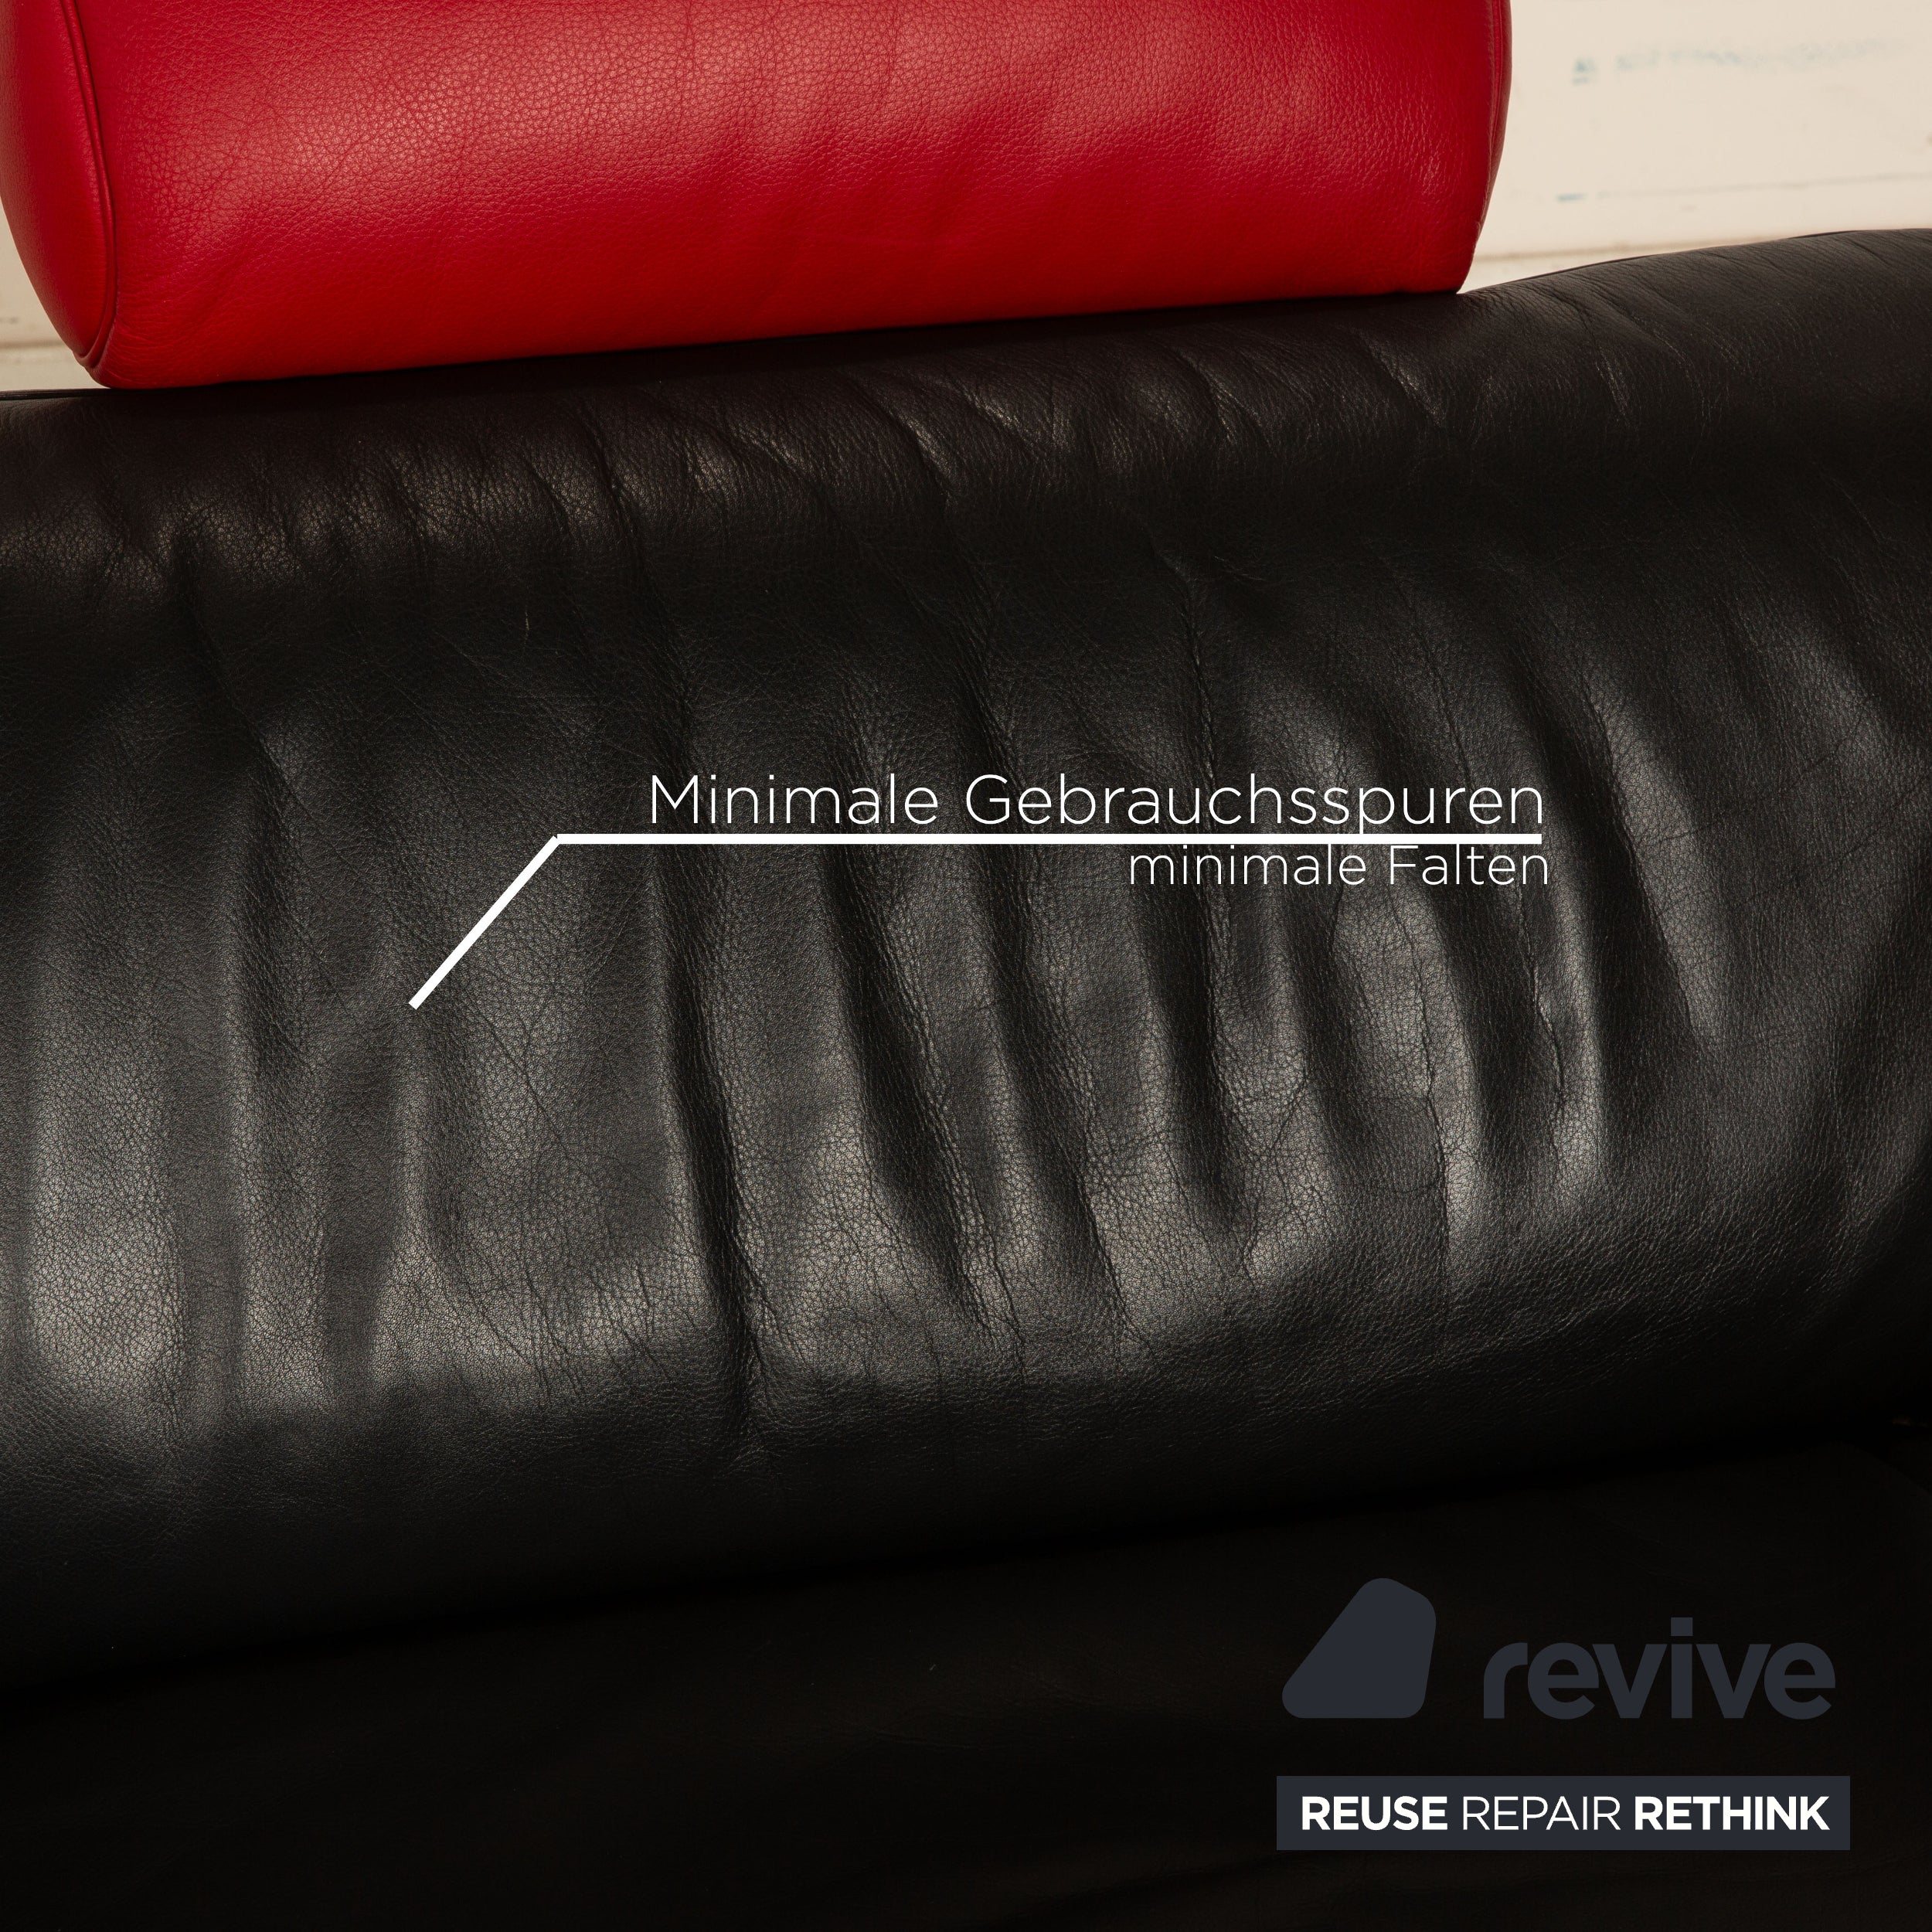 de Sede ds 140 Leder Zweisitzer Rot Schwarz manuelle Funktion Sofa Couch